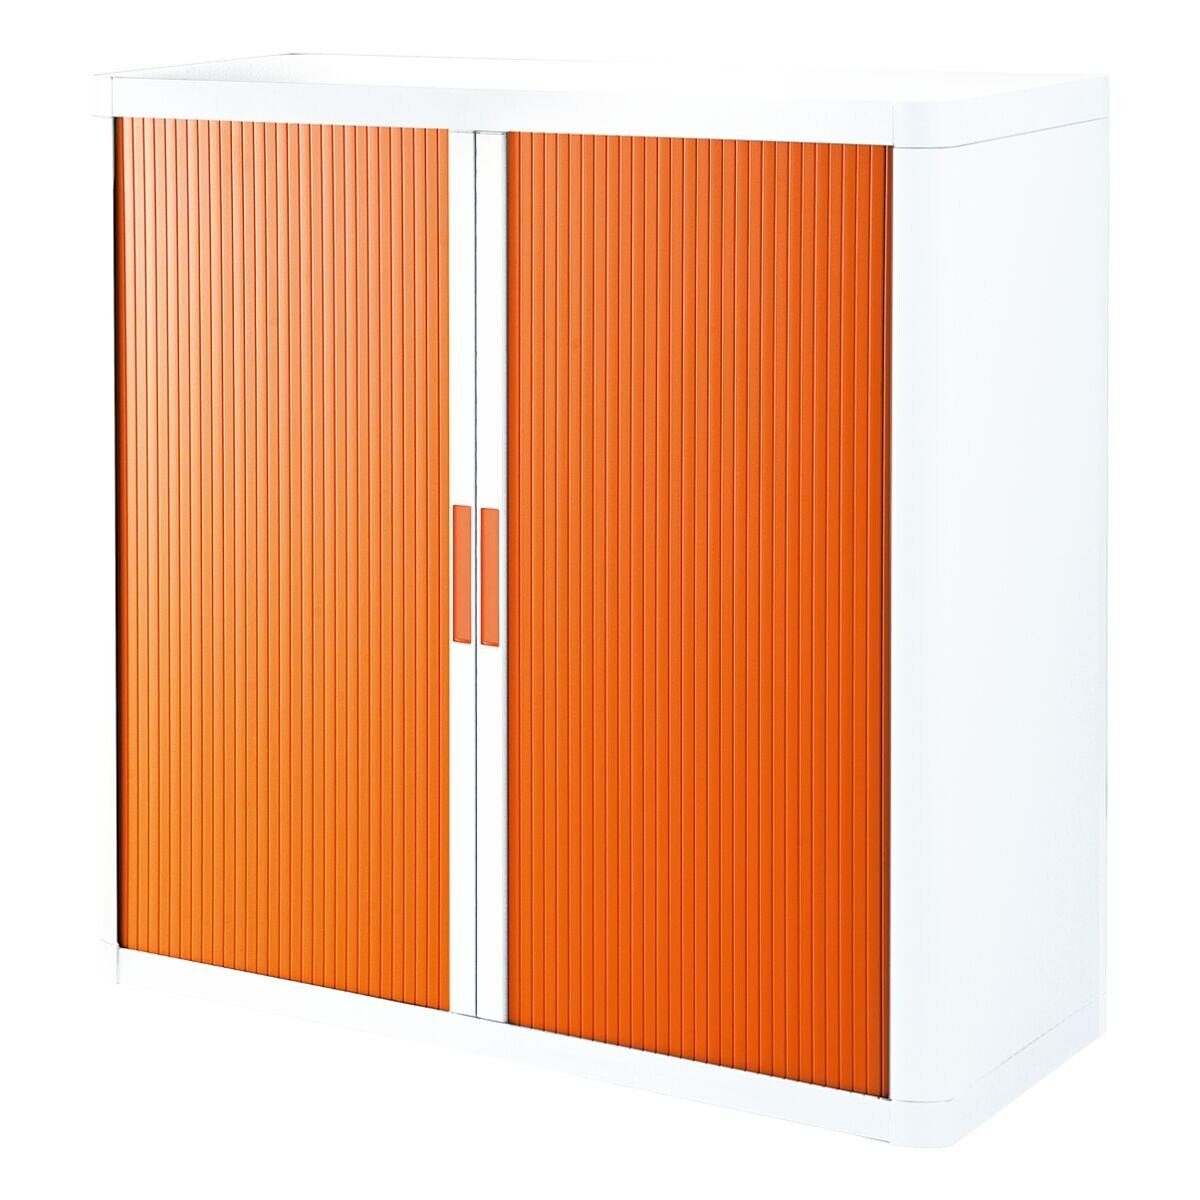 easyOffice weiß/orange farbig, farbig EASYOFFICE weiß, Korpus Griff Lamellen Rollladenschrank